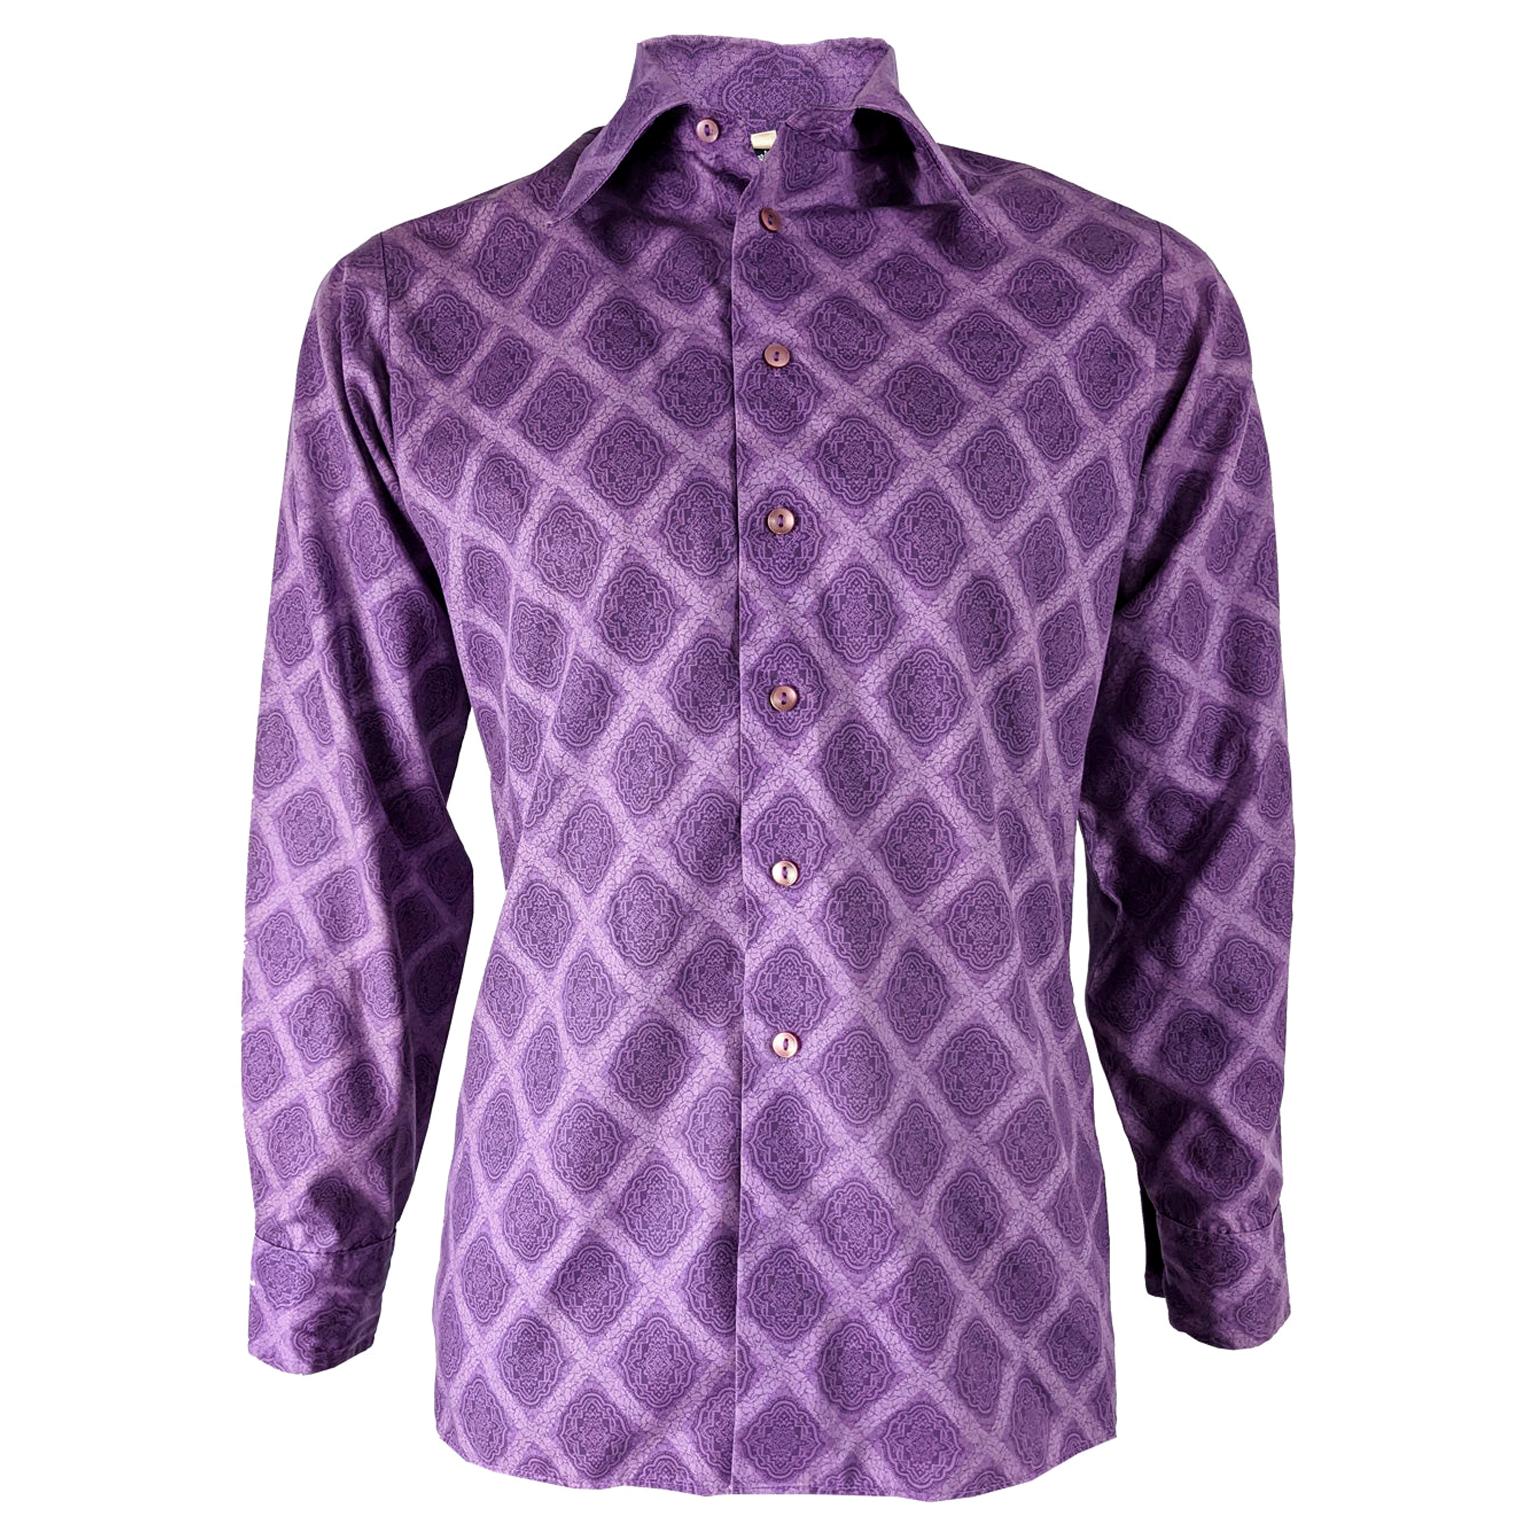 Mens Vintage Purple Mod Fashion Shirt, 1970s